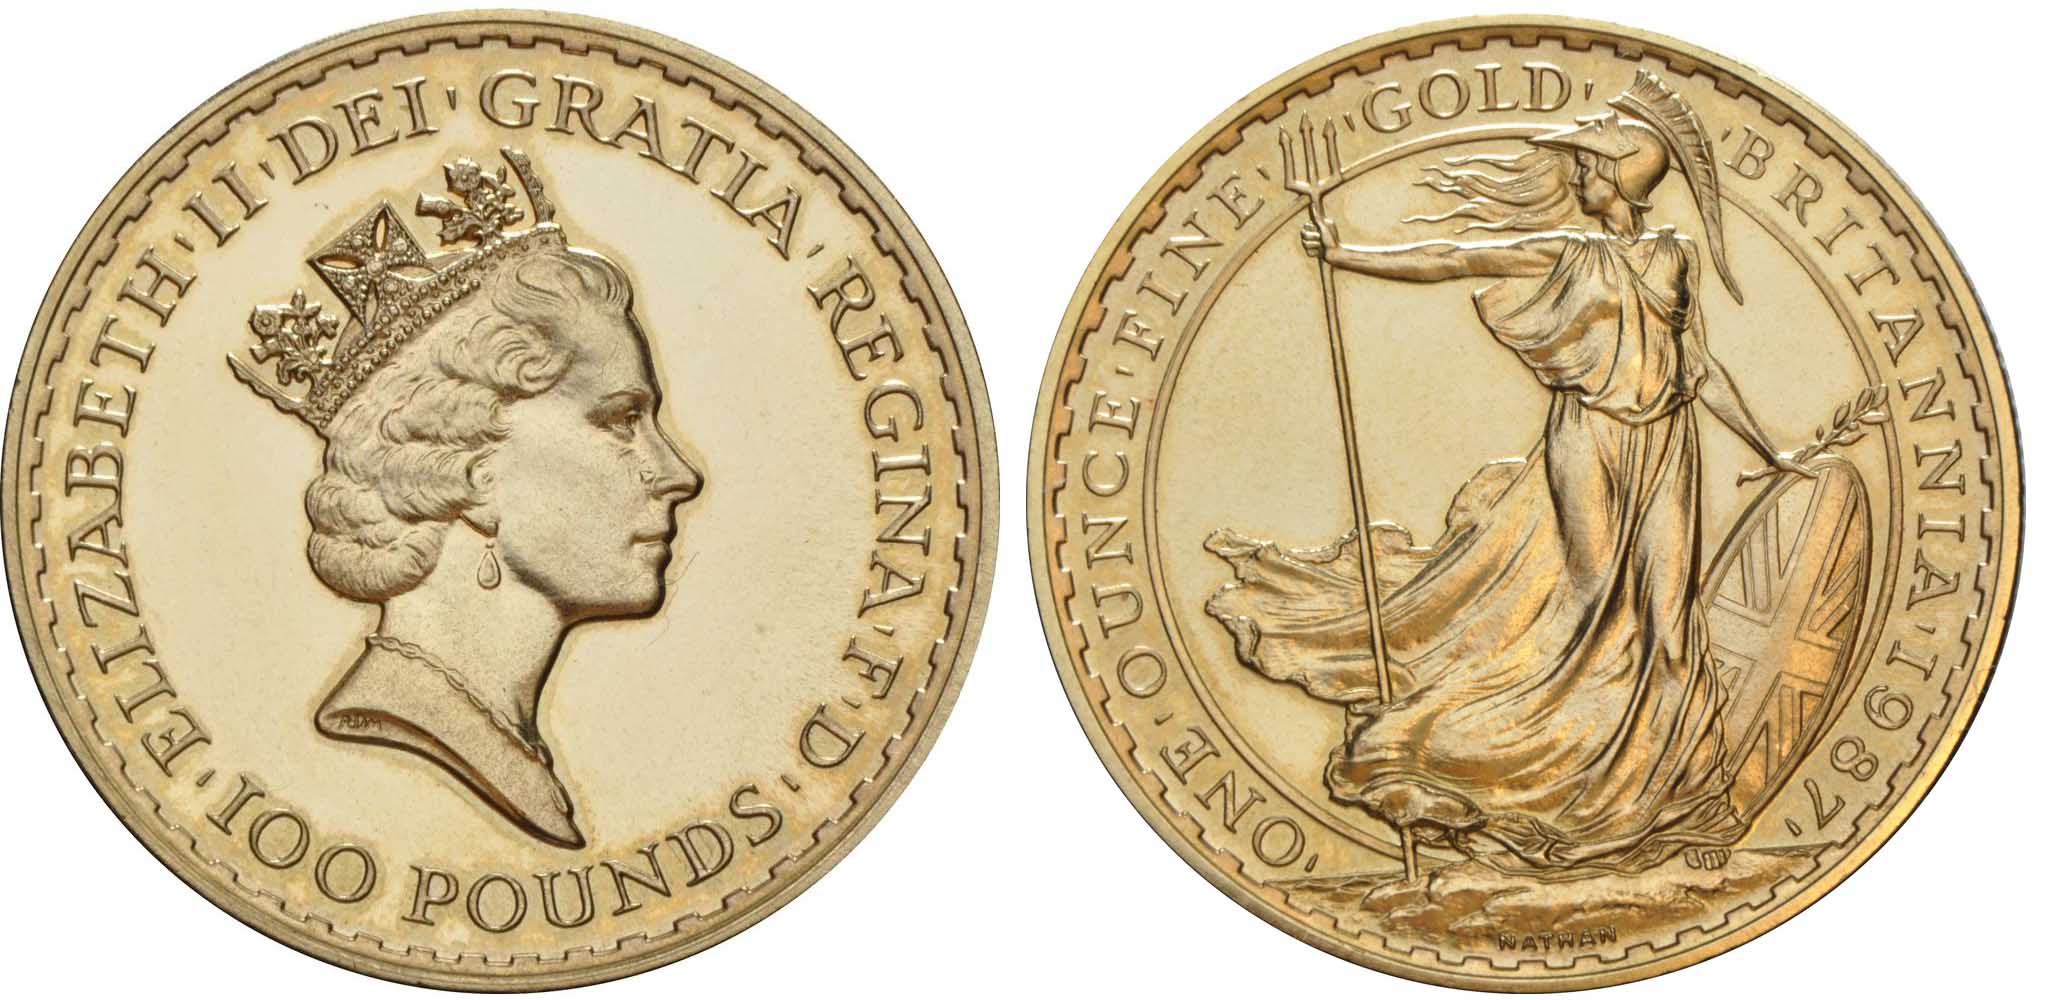 BRITANNIA 1 OZ. GOLD 1987 – 2012